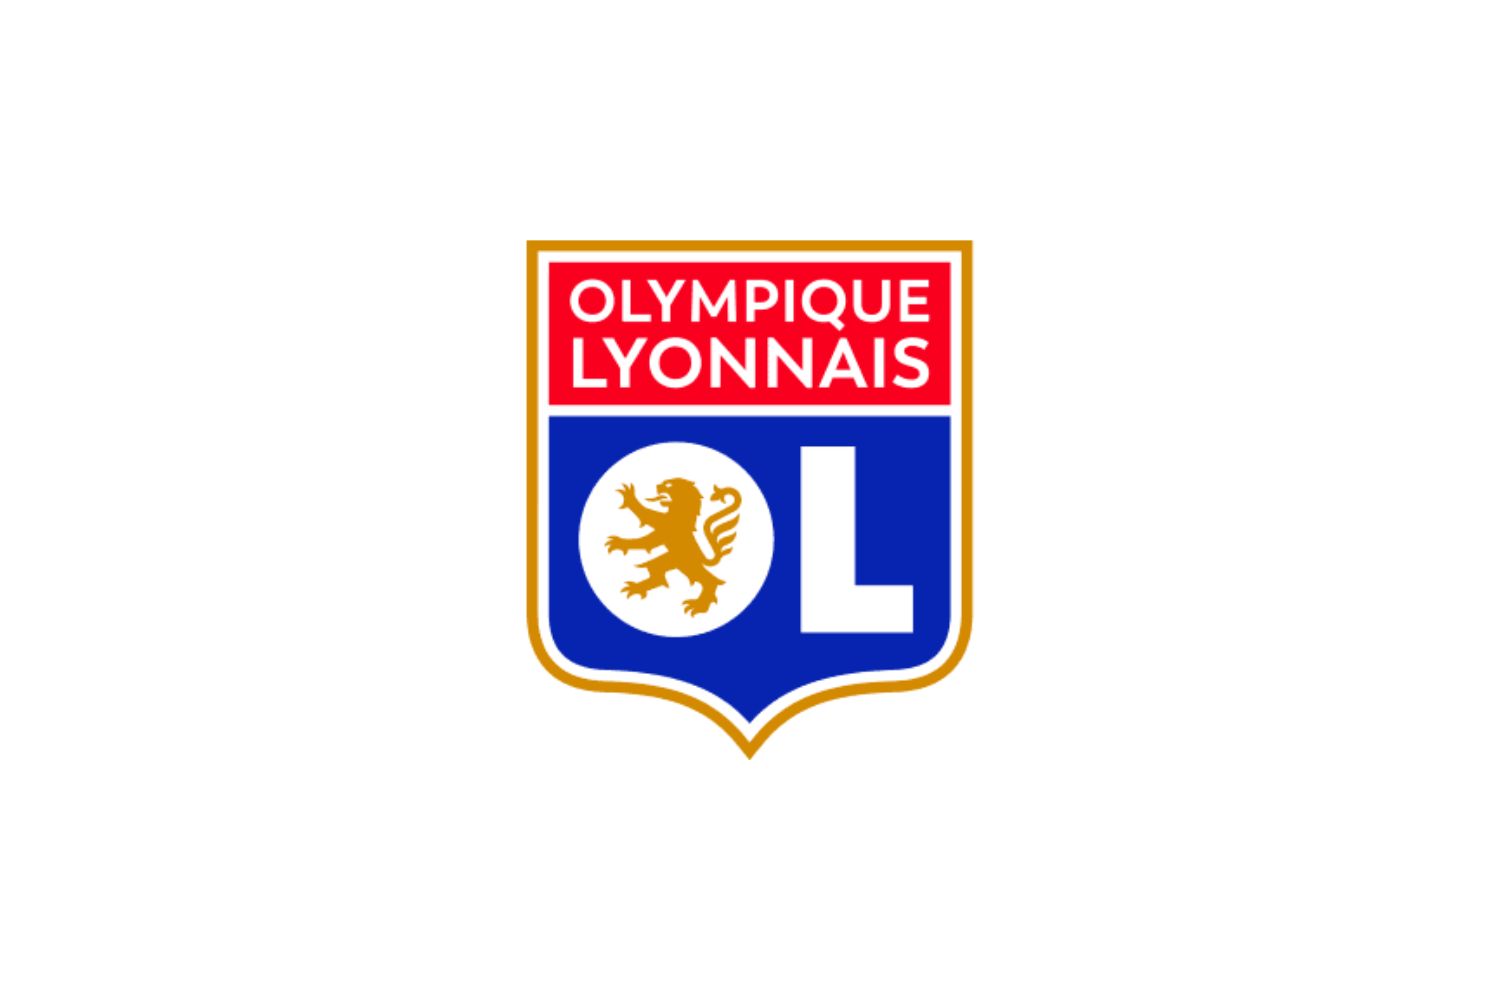 olympique-lyonnais-11-football-club-facts